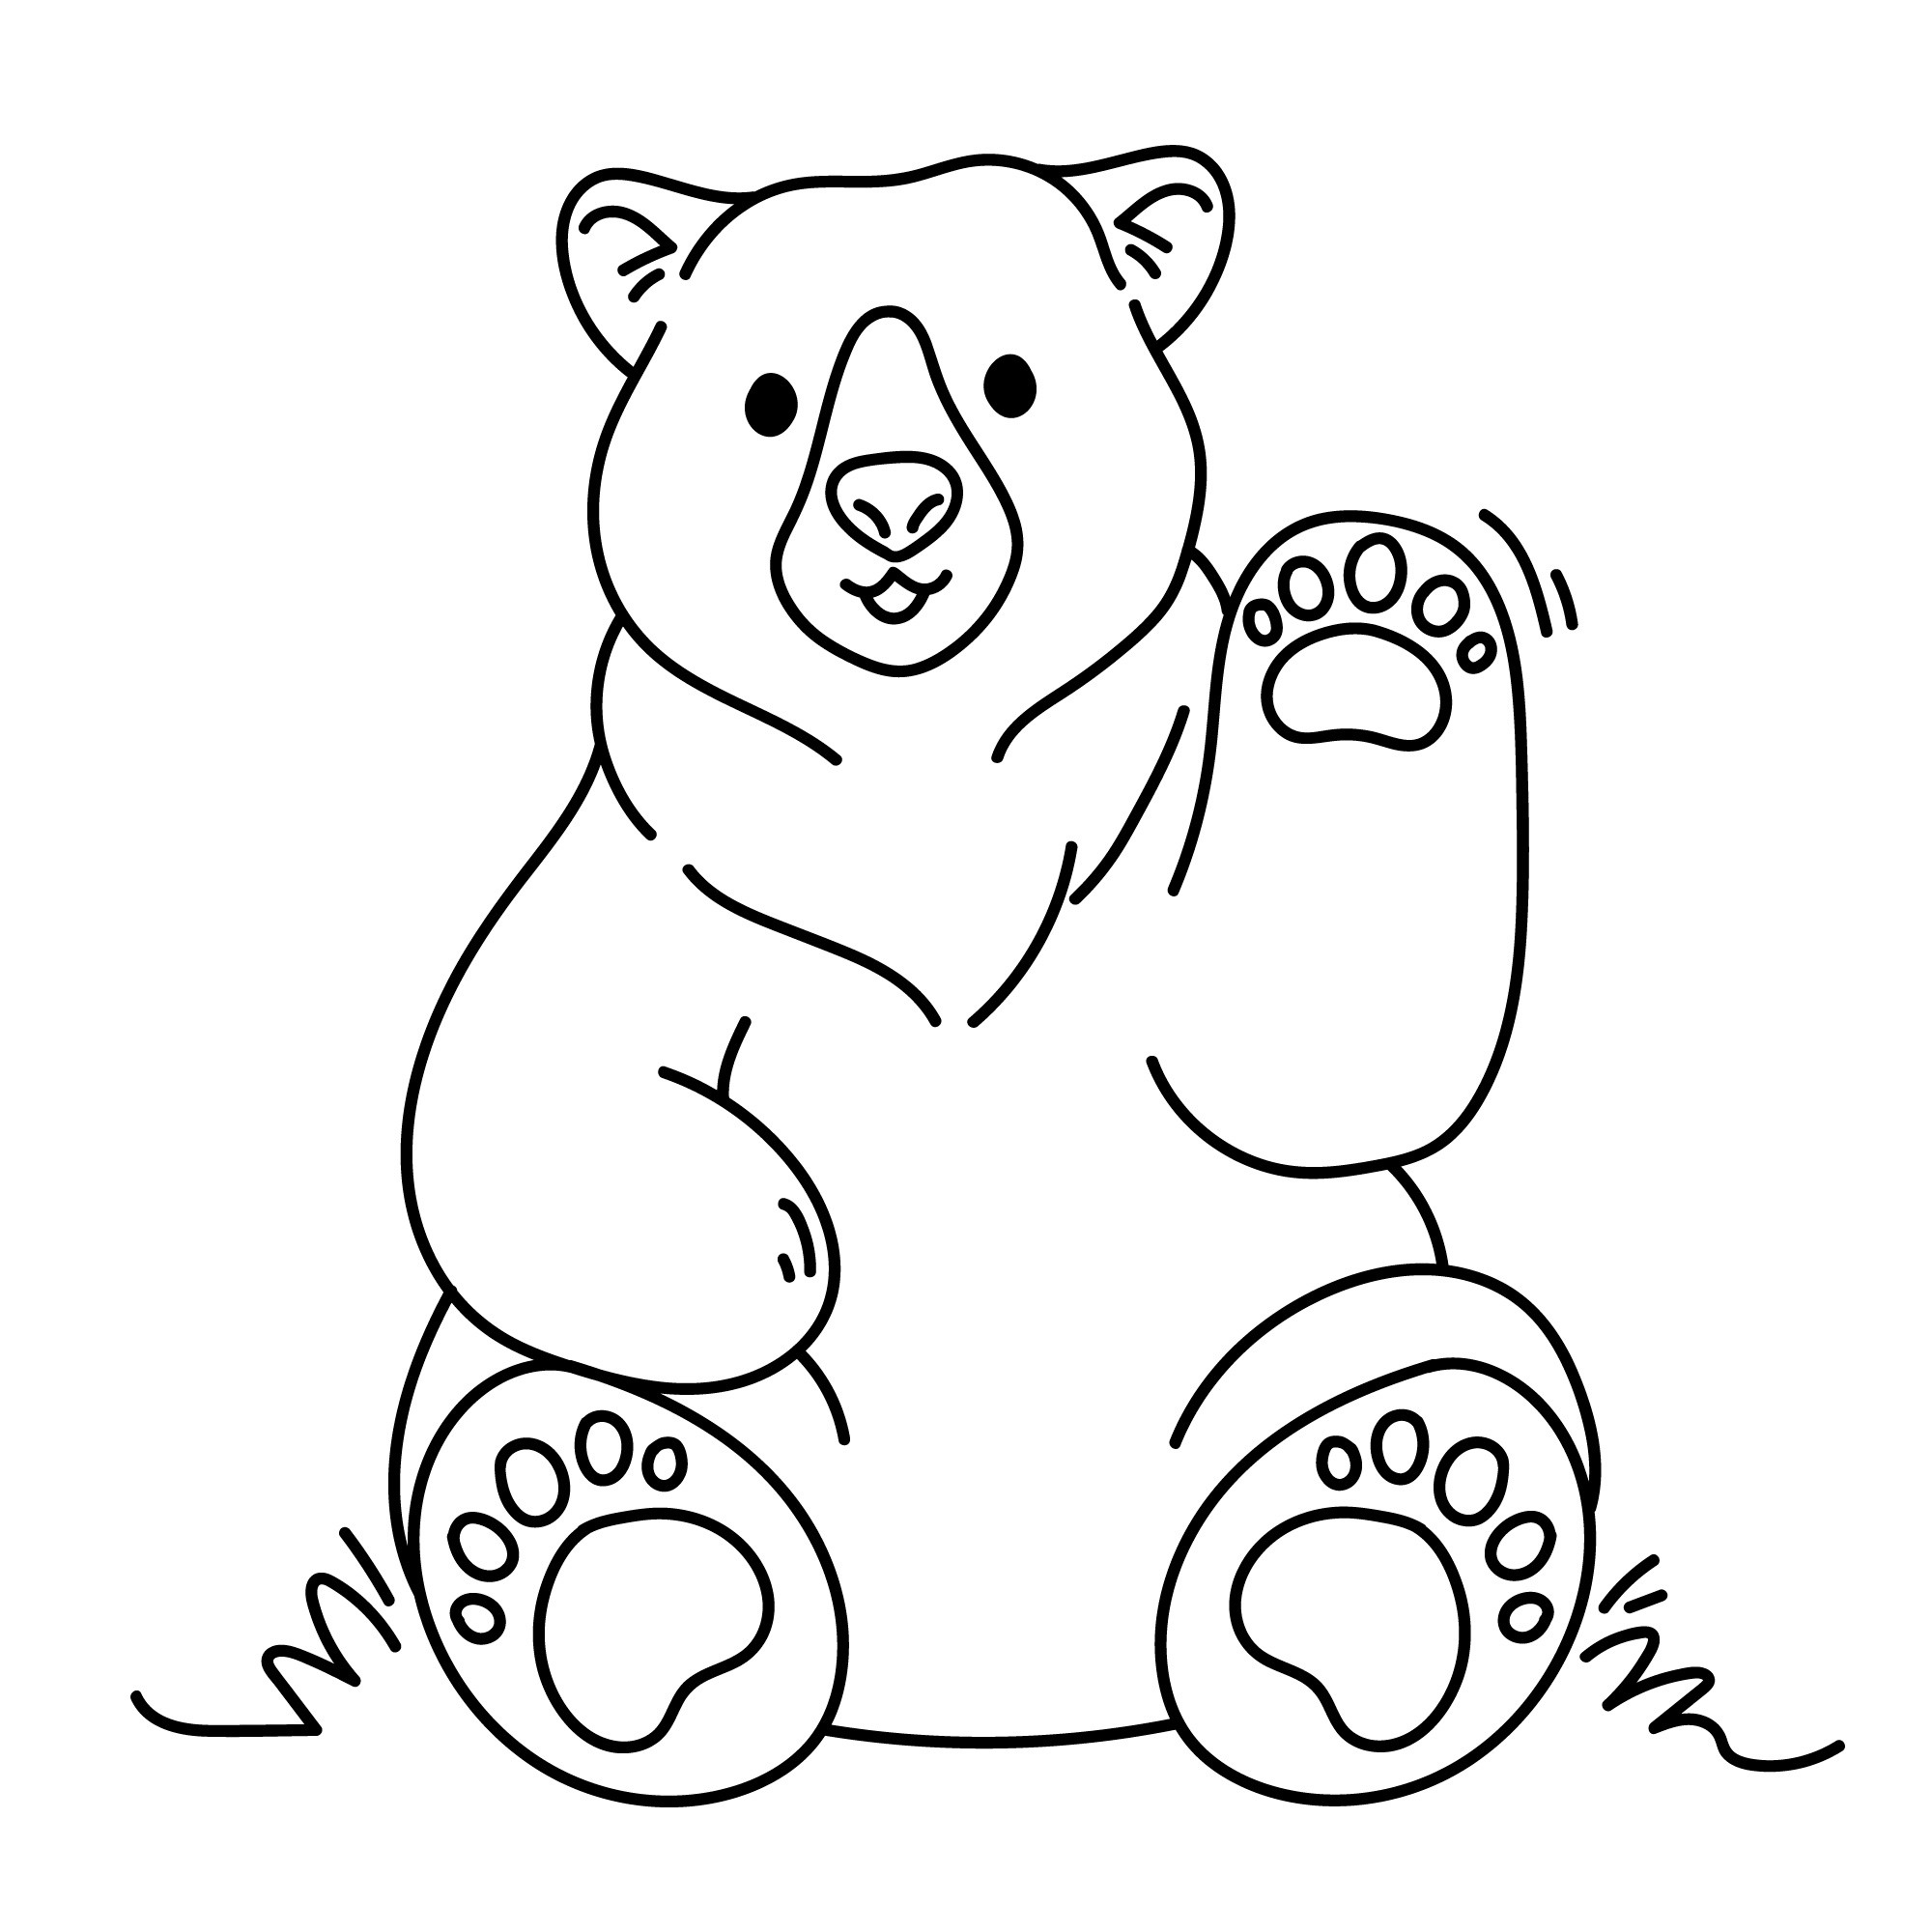 Раскраска для детей: сидящий белый медведь с поднятой лапой